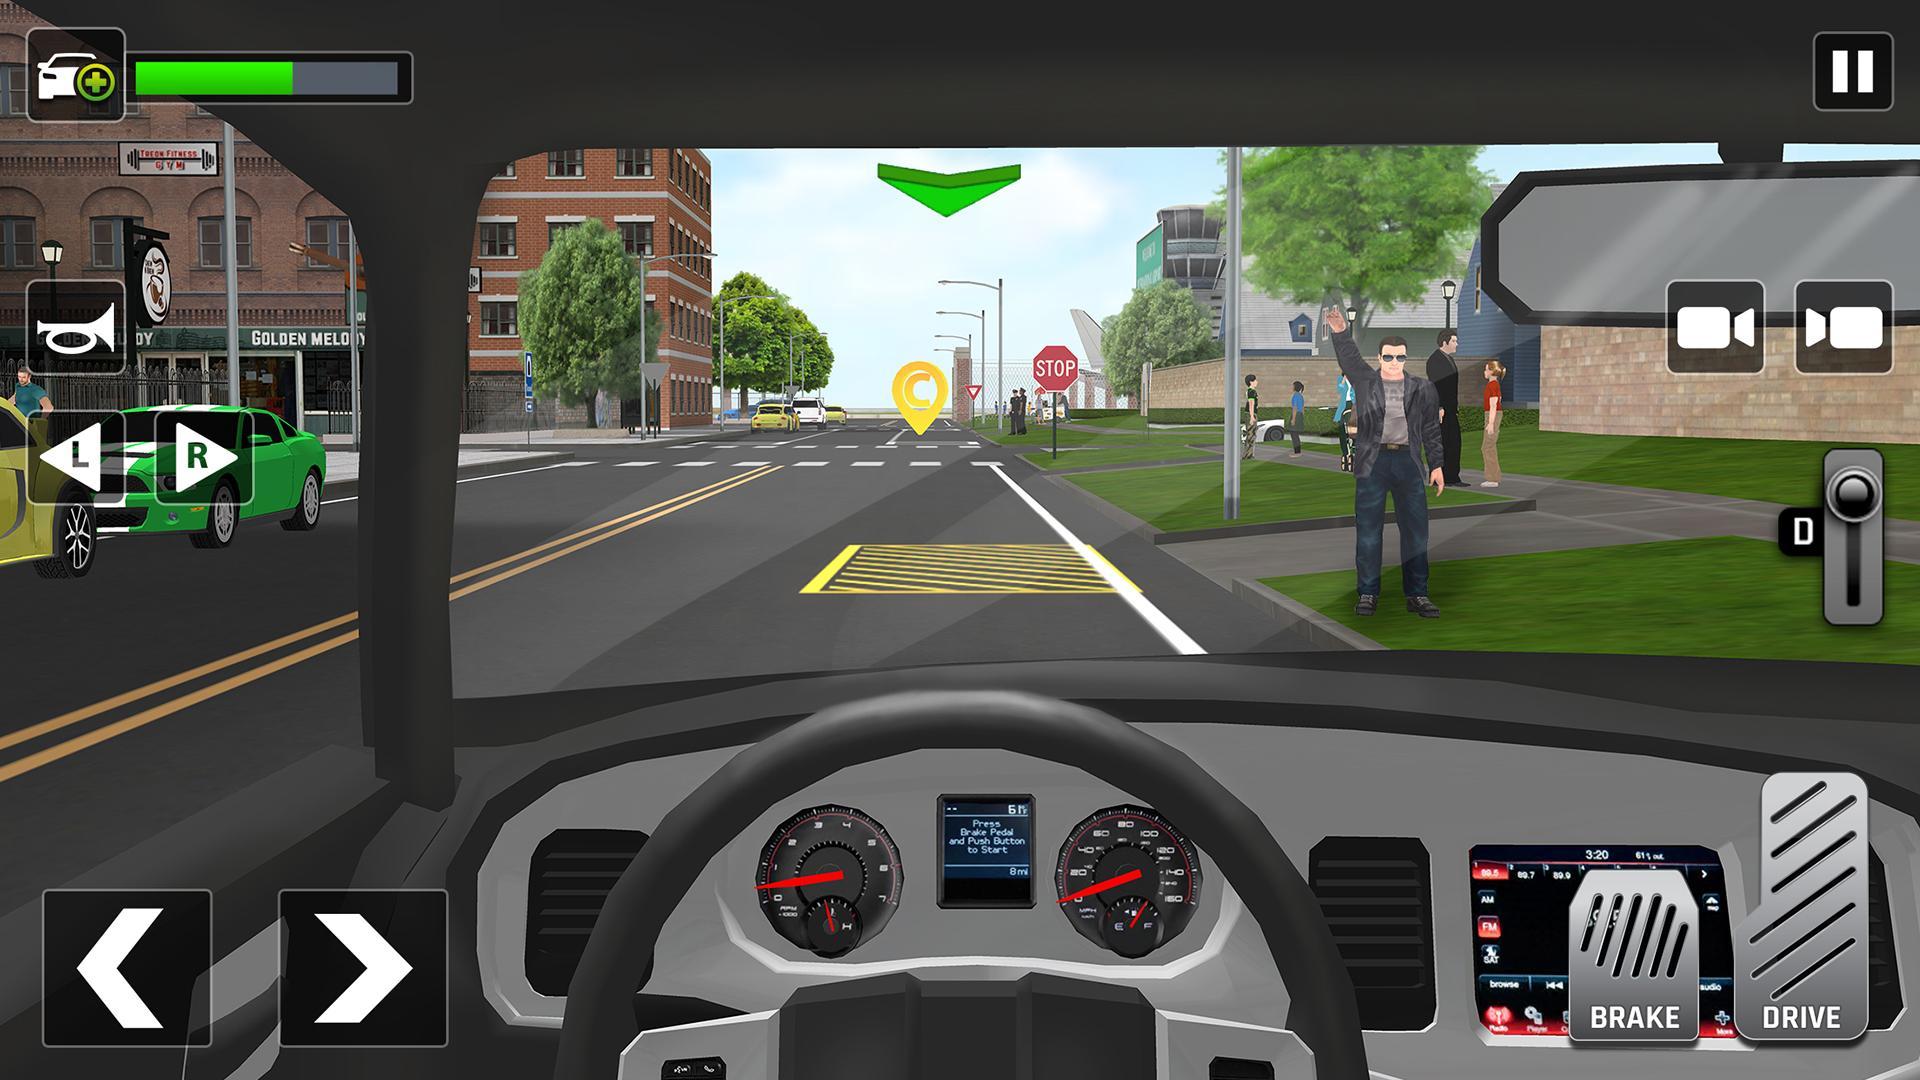 Taxi life a city driving simulator читы. Симулятор вождения City car Driving. City car Driving такси. City Taxi Simulator. Такси симулятор 2020.